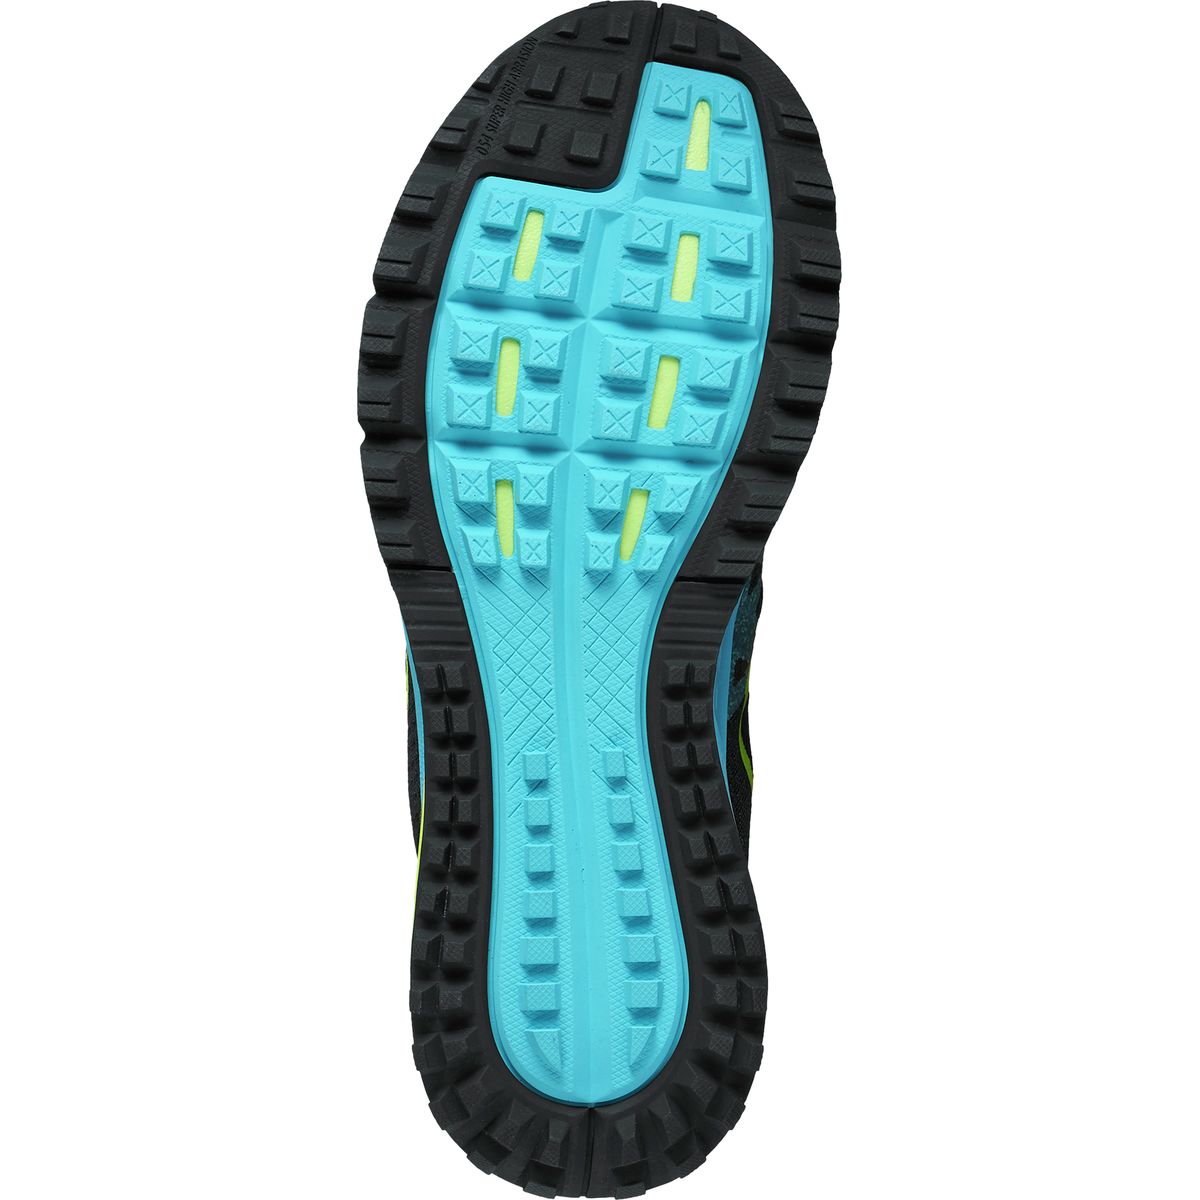 Nike Air Zoom Wildhorse 3 Trail Running Shoe - Men's - Footwear